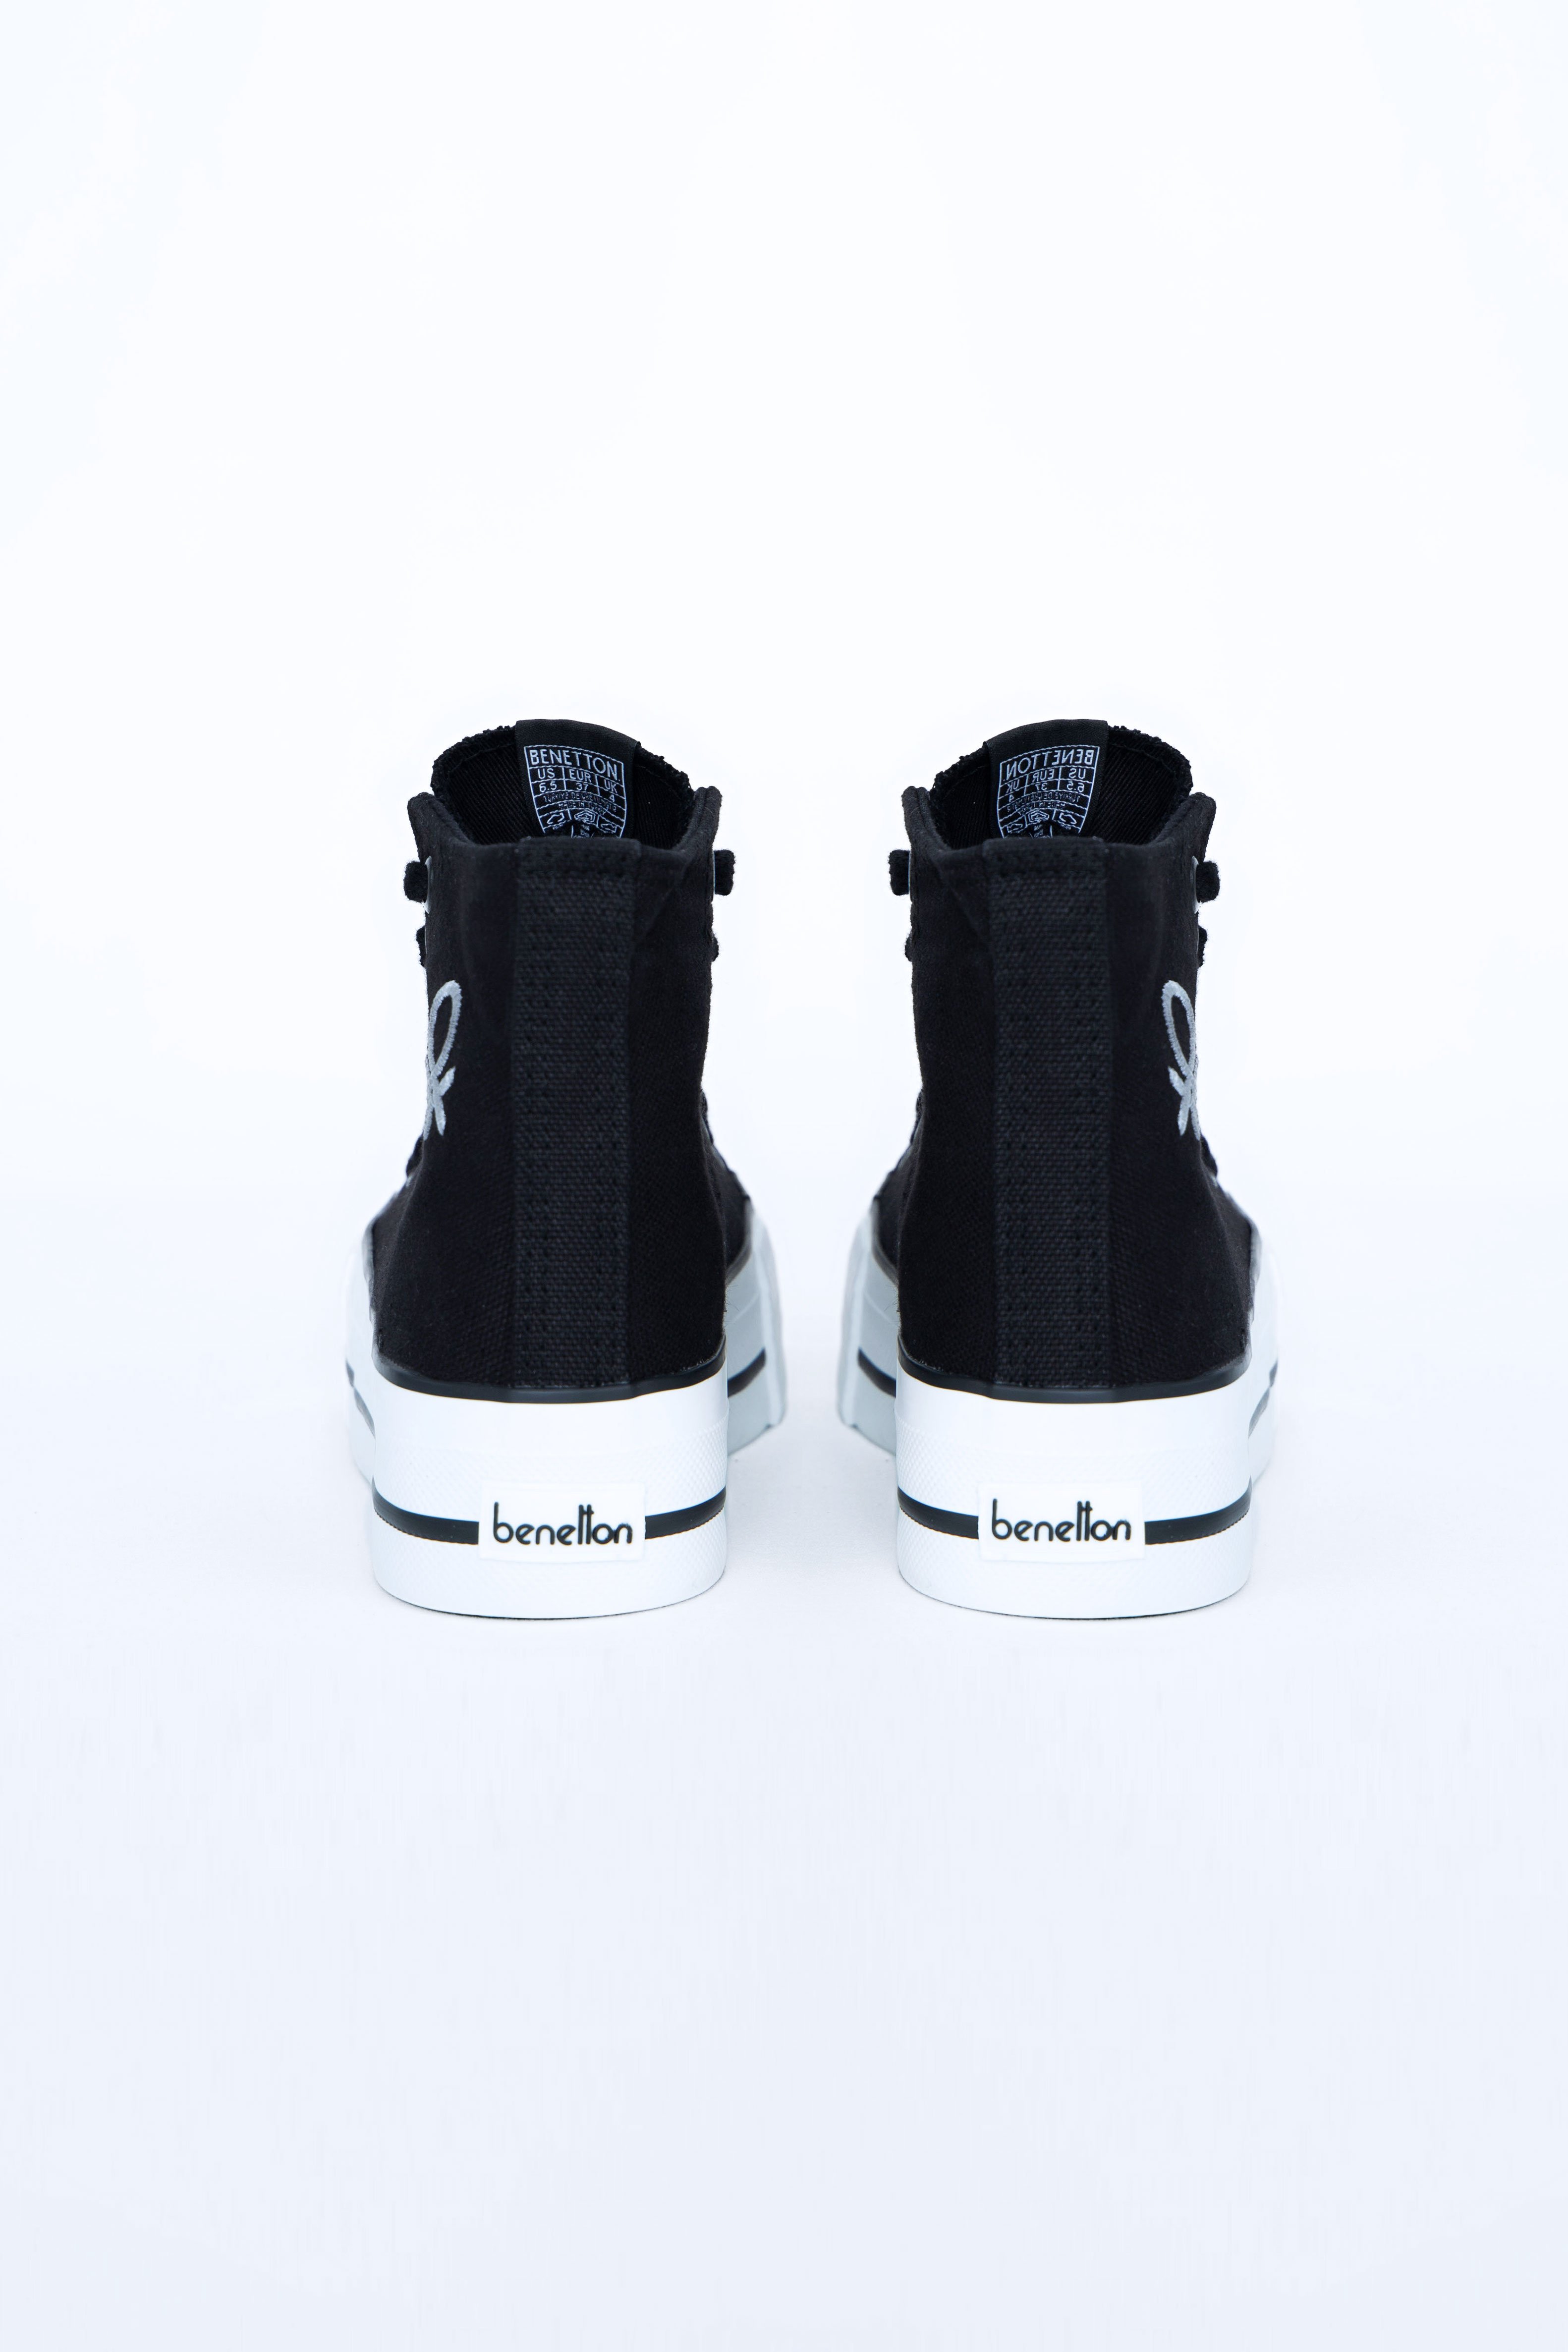 Kadın Kalın Topuklu Spor Ayakkabı BN-30939-Siyah - 4